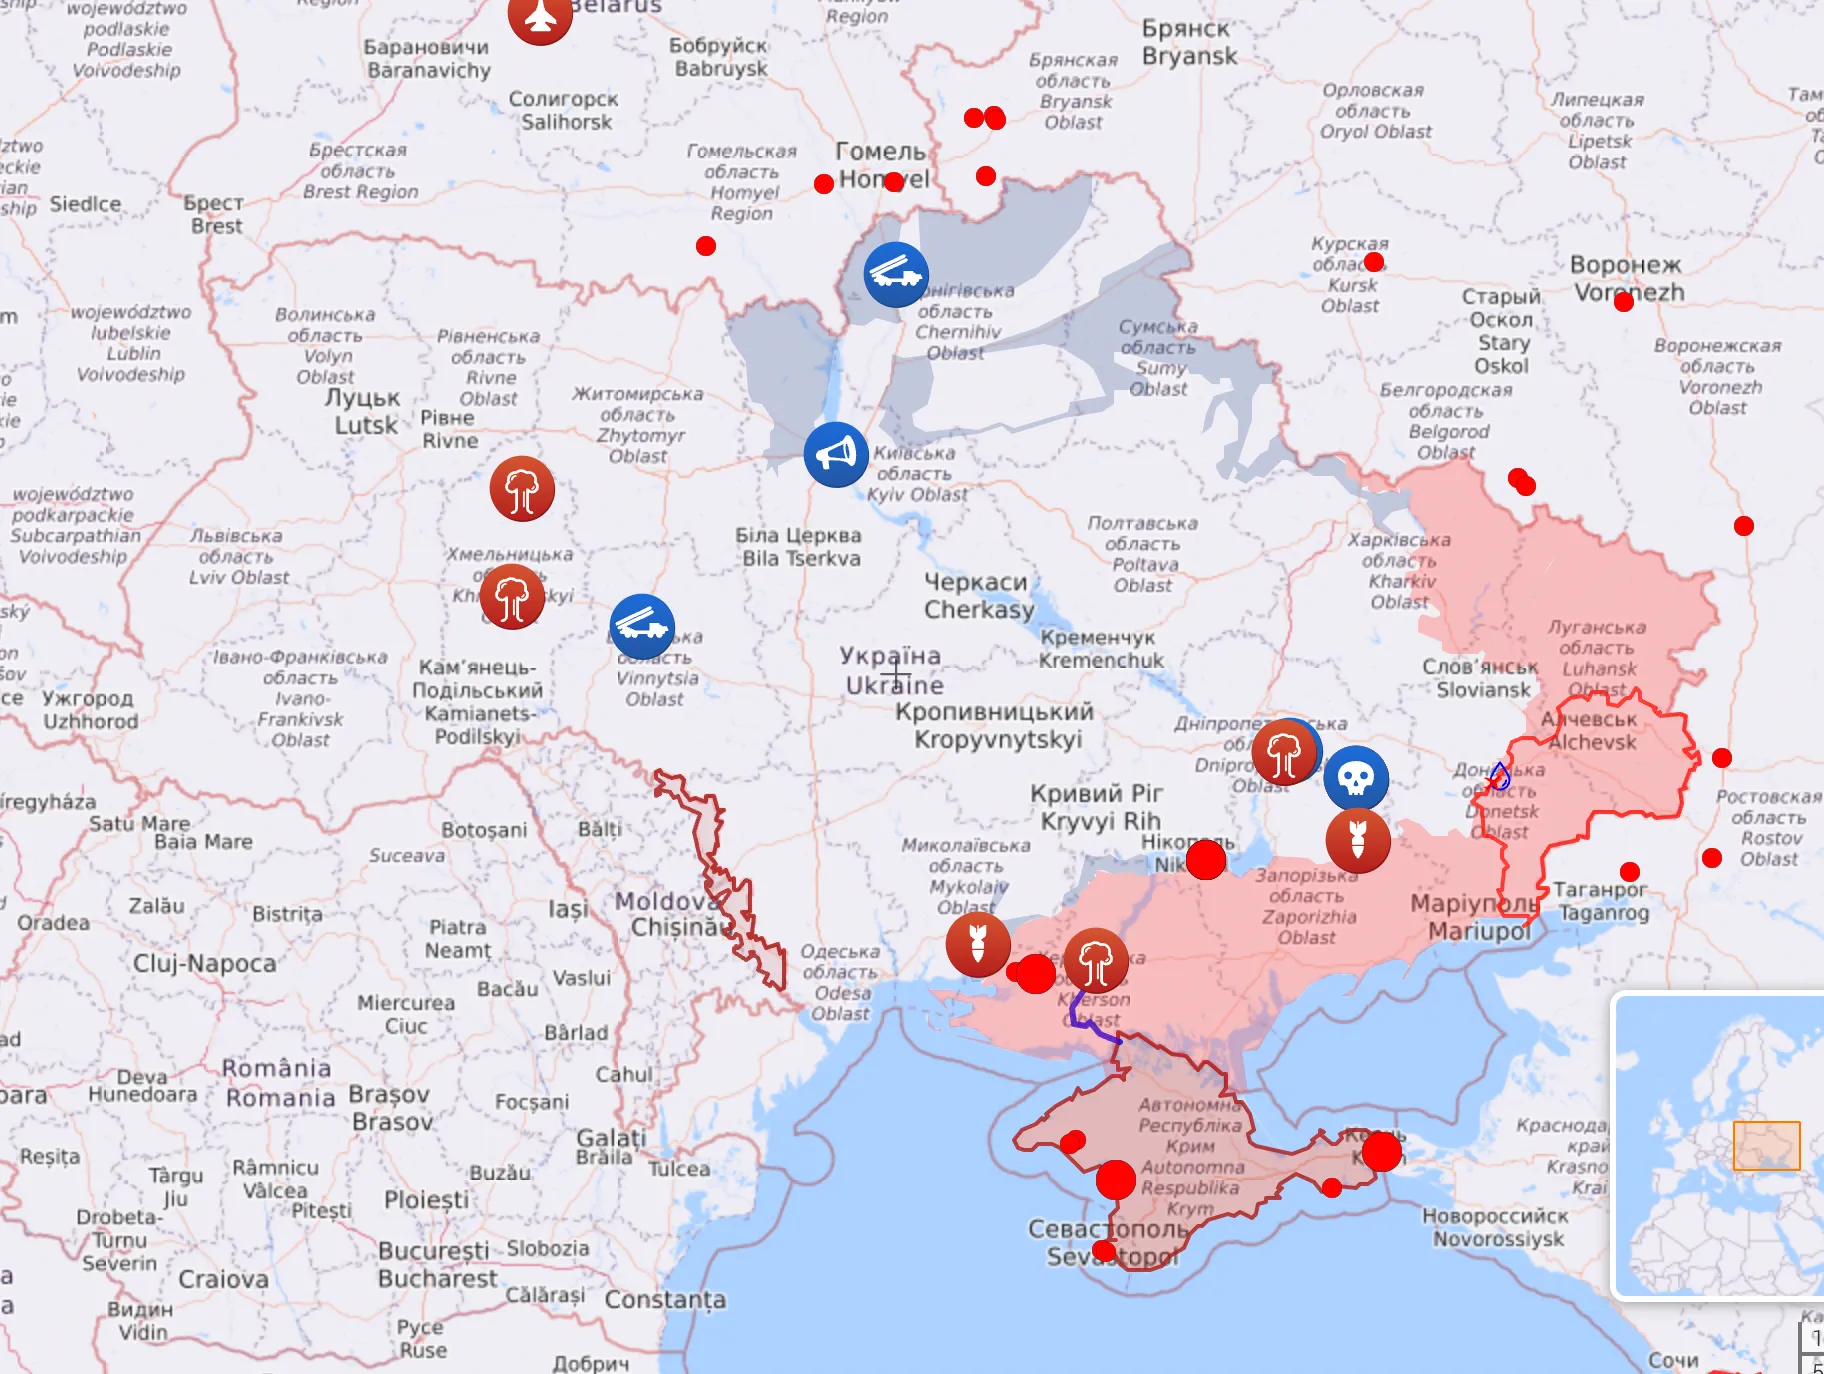 Карта боевых действий в Украине по состоянию на утро 25 августа